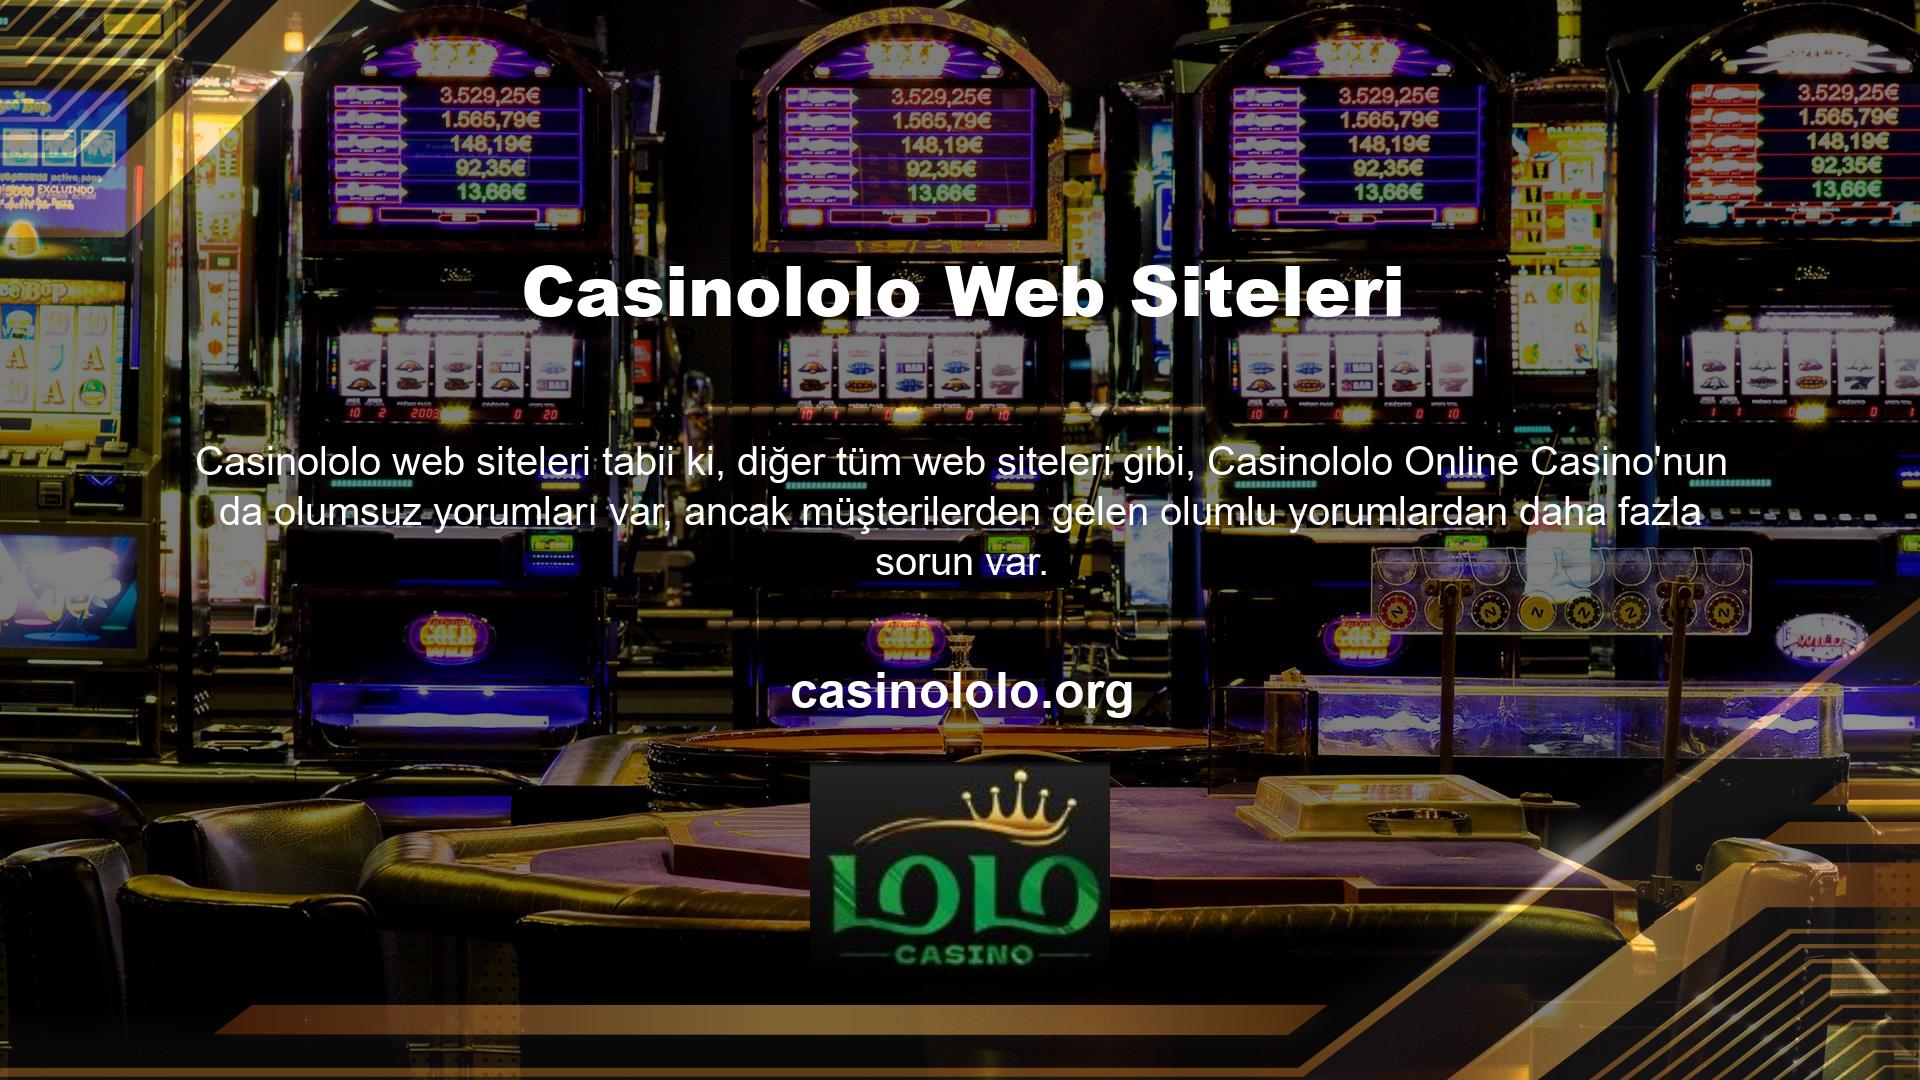 Casinololo küresel oyun pazarındaki varlığı, üyeleri için çok şey ifade ediyor